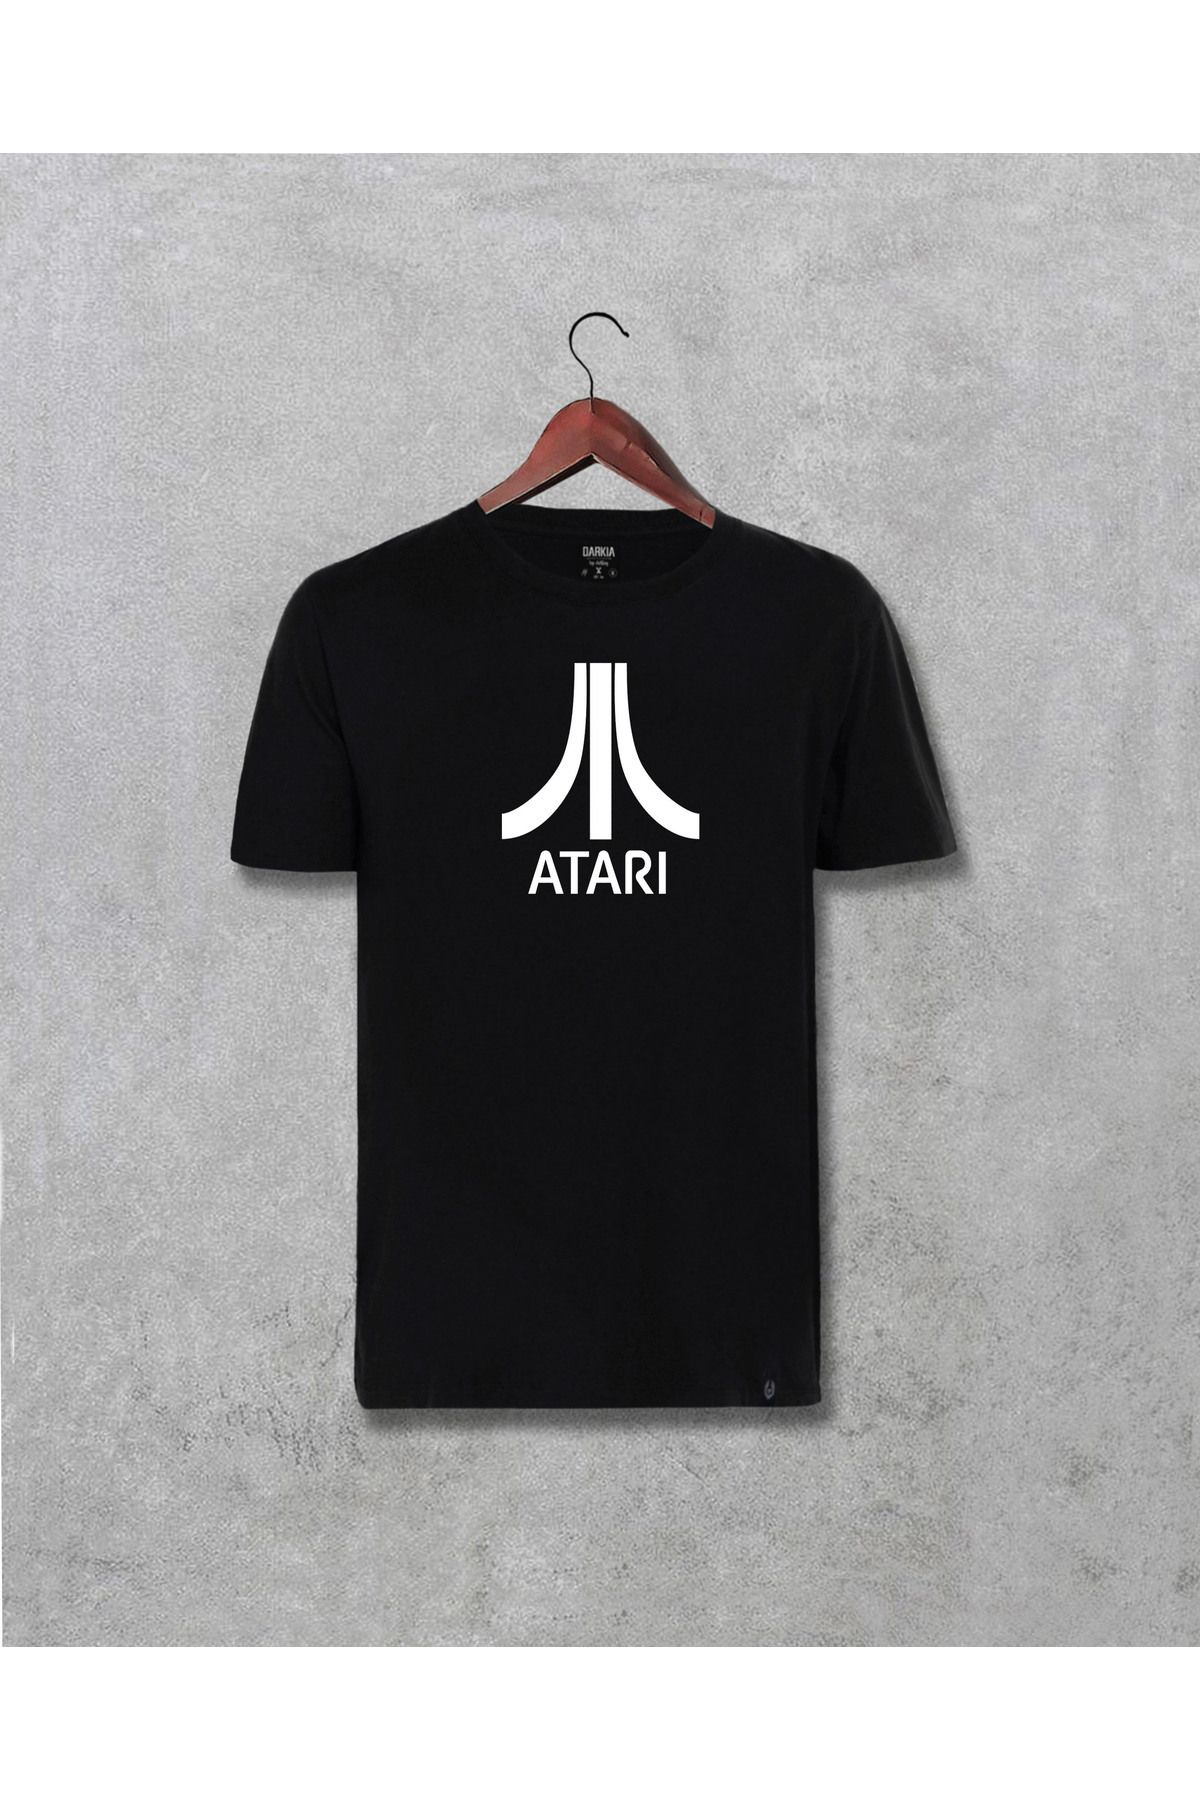 CB MAN COLLECTİON Atari Logo Tasarım Baskılı Unisex Tişört